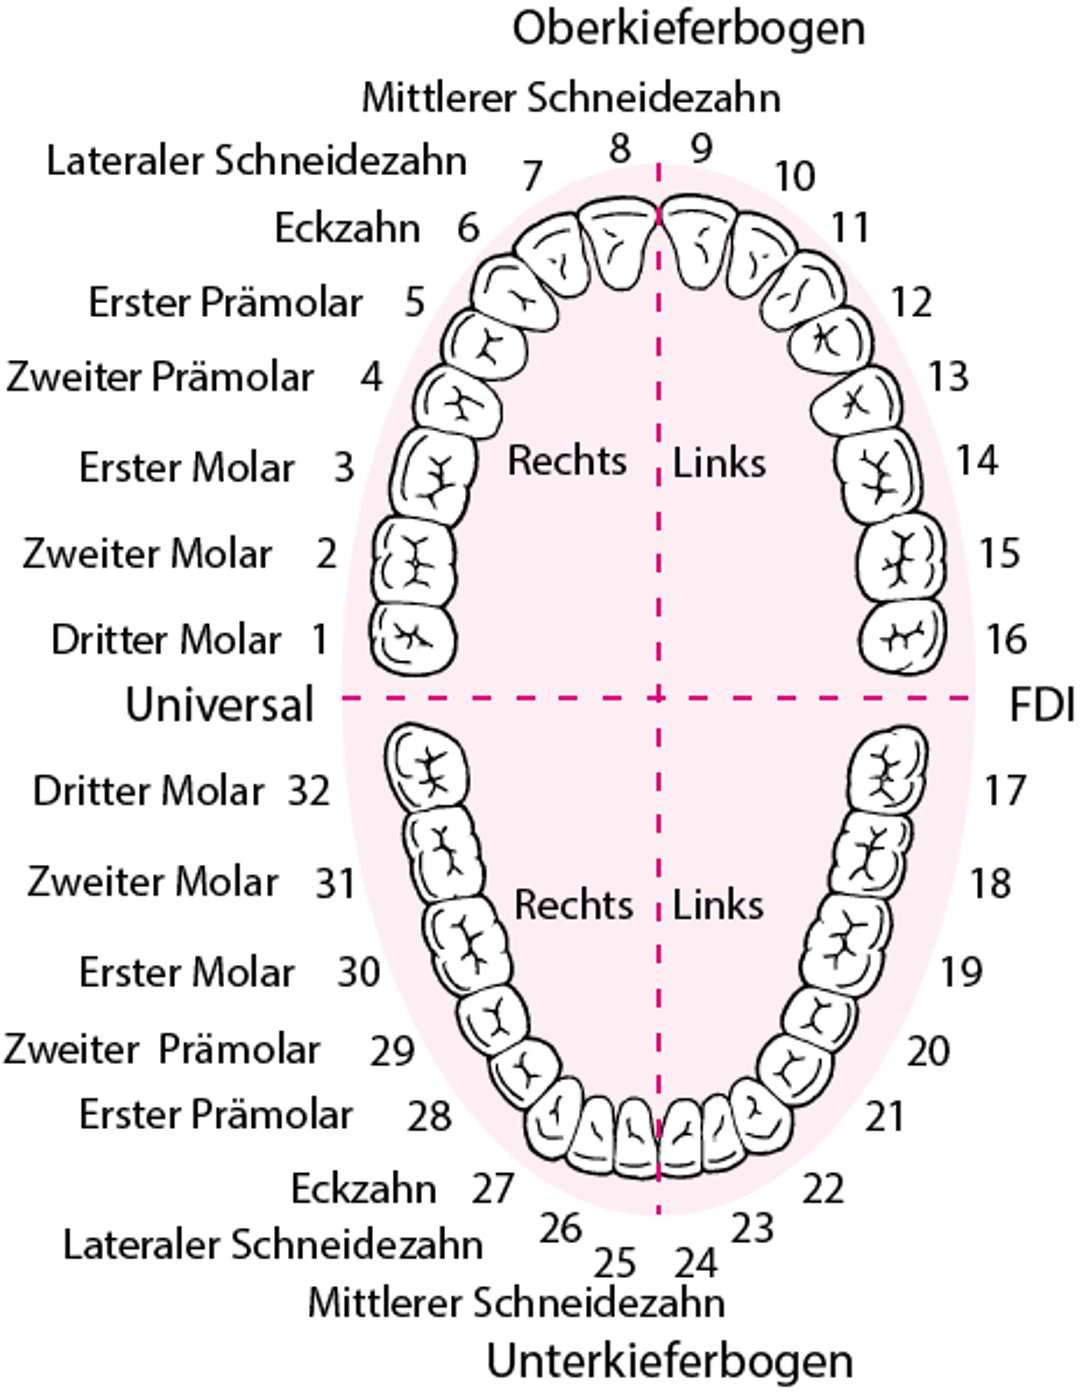 Identifizierung der Zähne